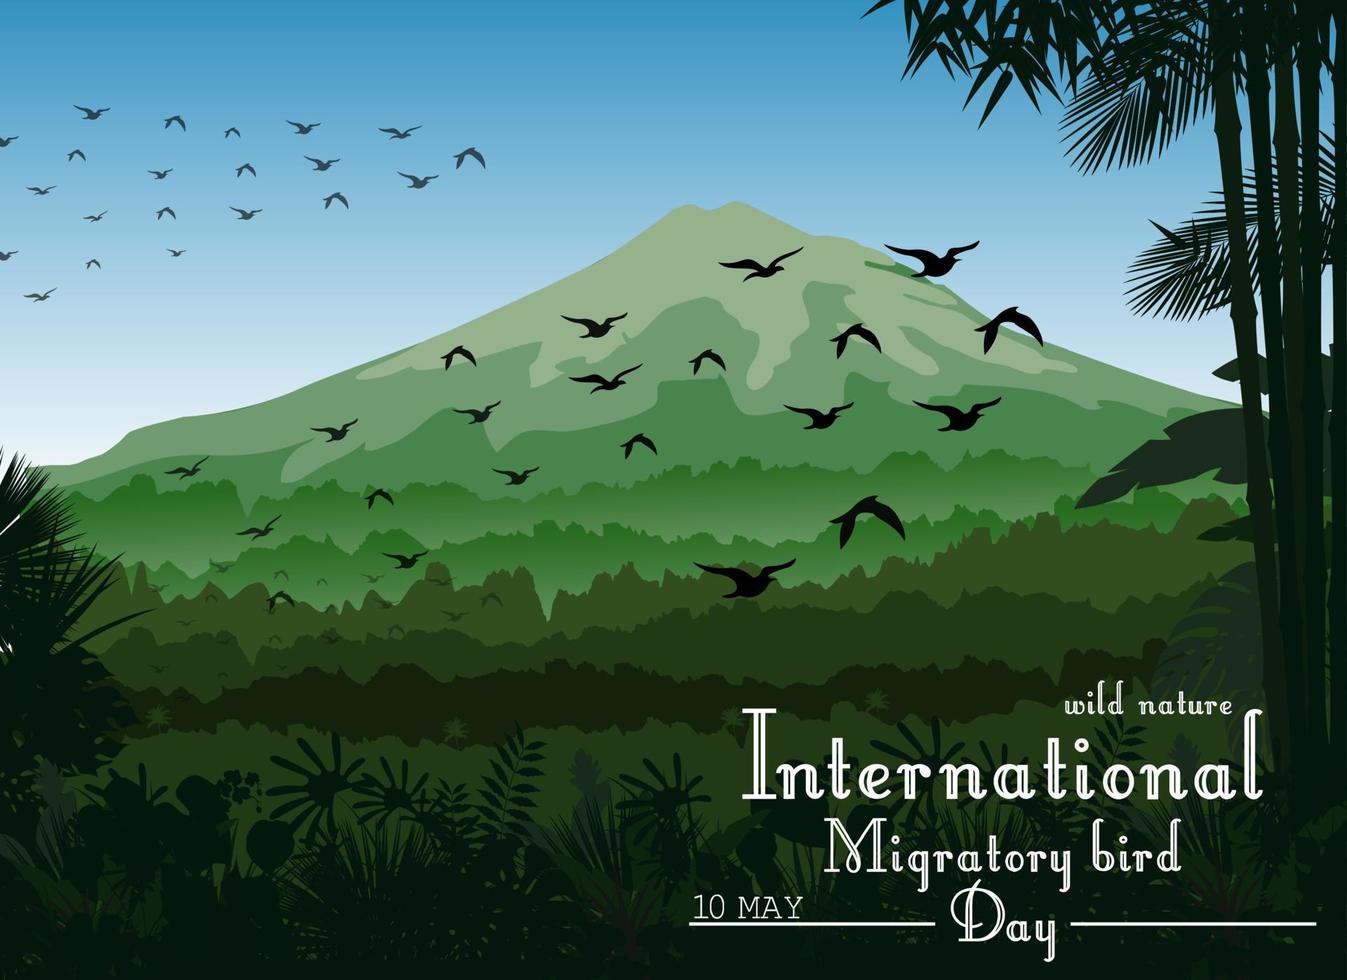 paisaje montañoso de fondo tropical con pájaros voladores para el día de las aves migratorias vector